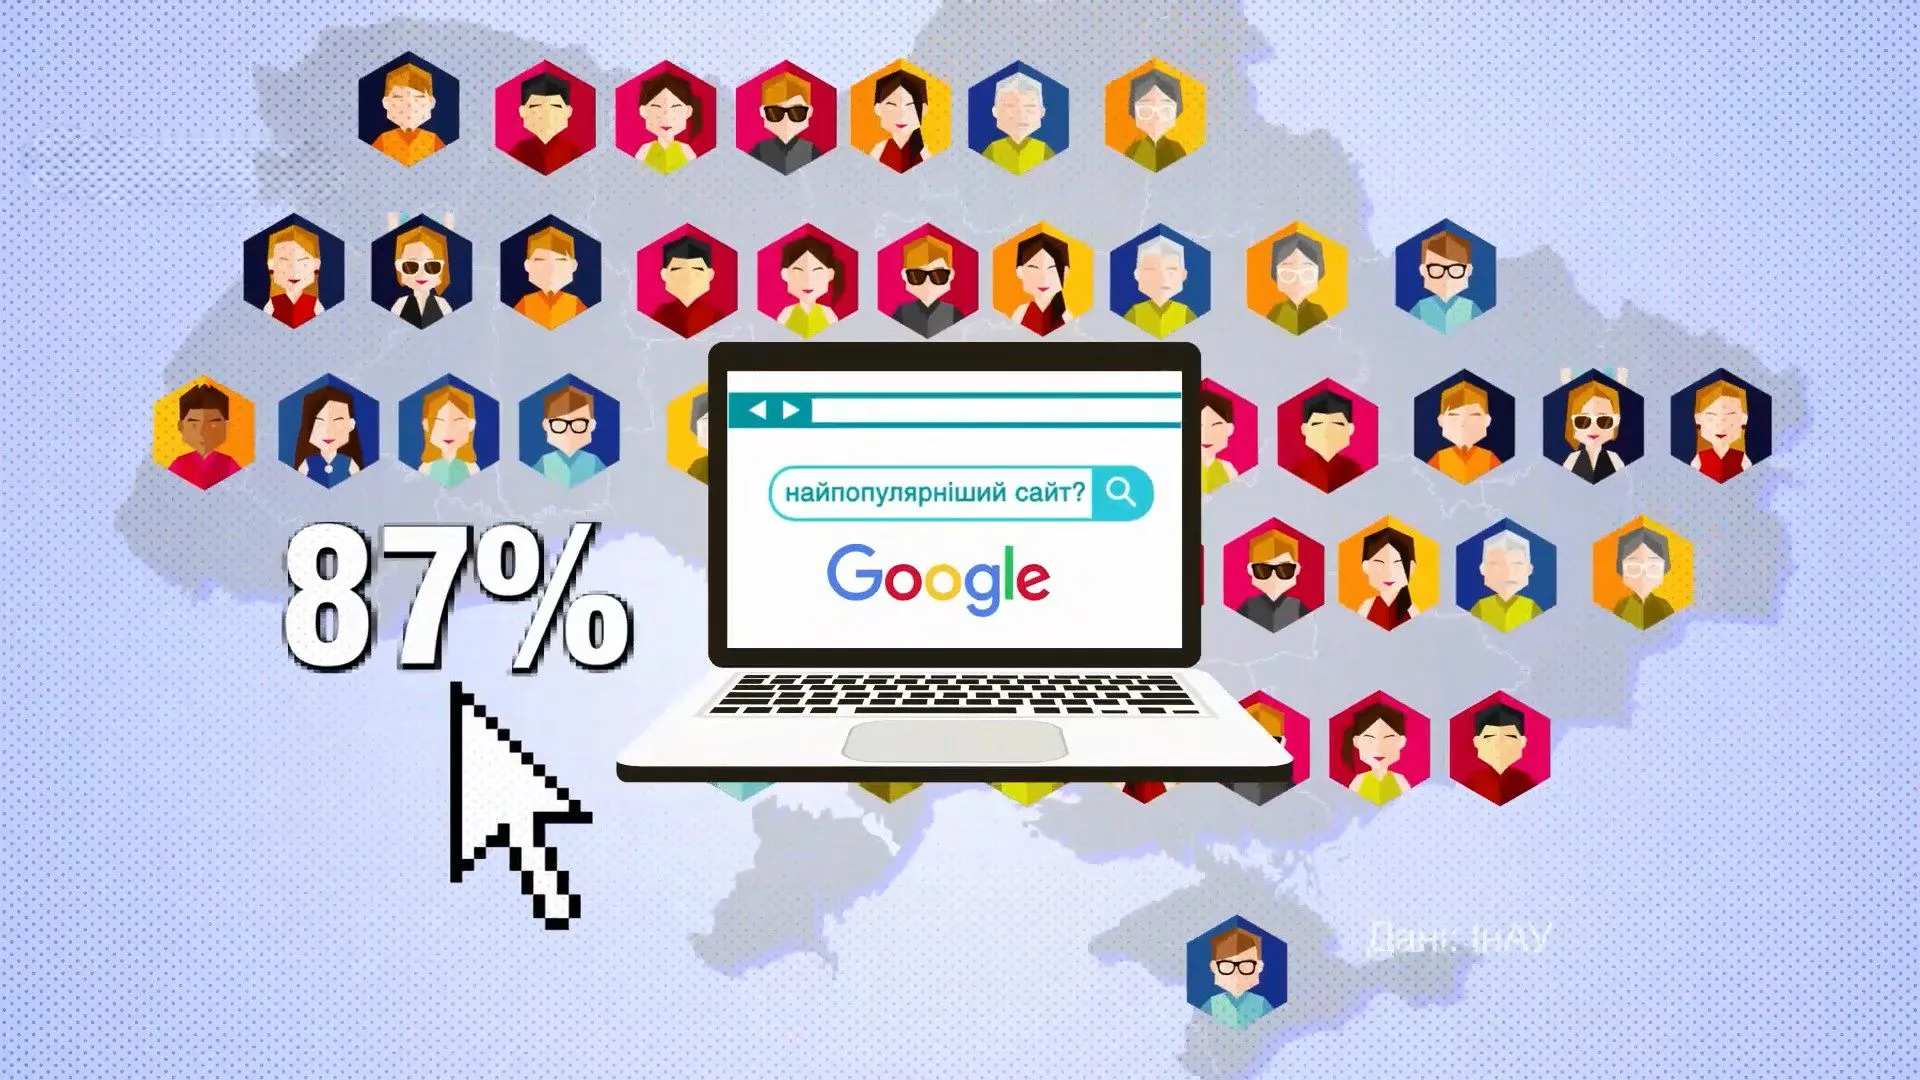 Google став найпопулярнішим сайтом серед українців